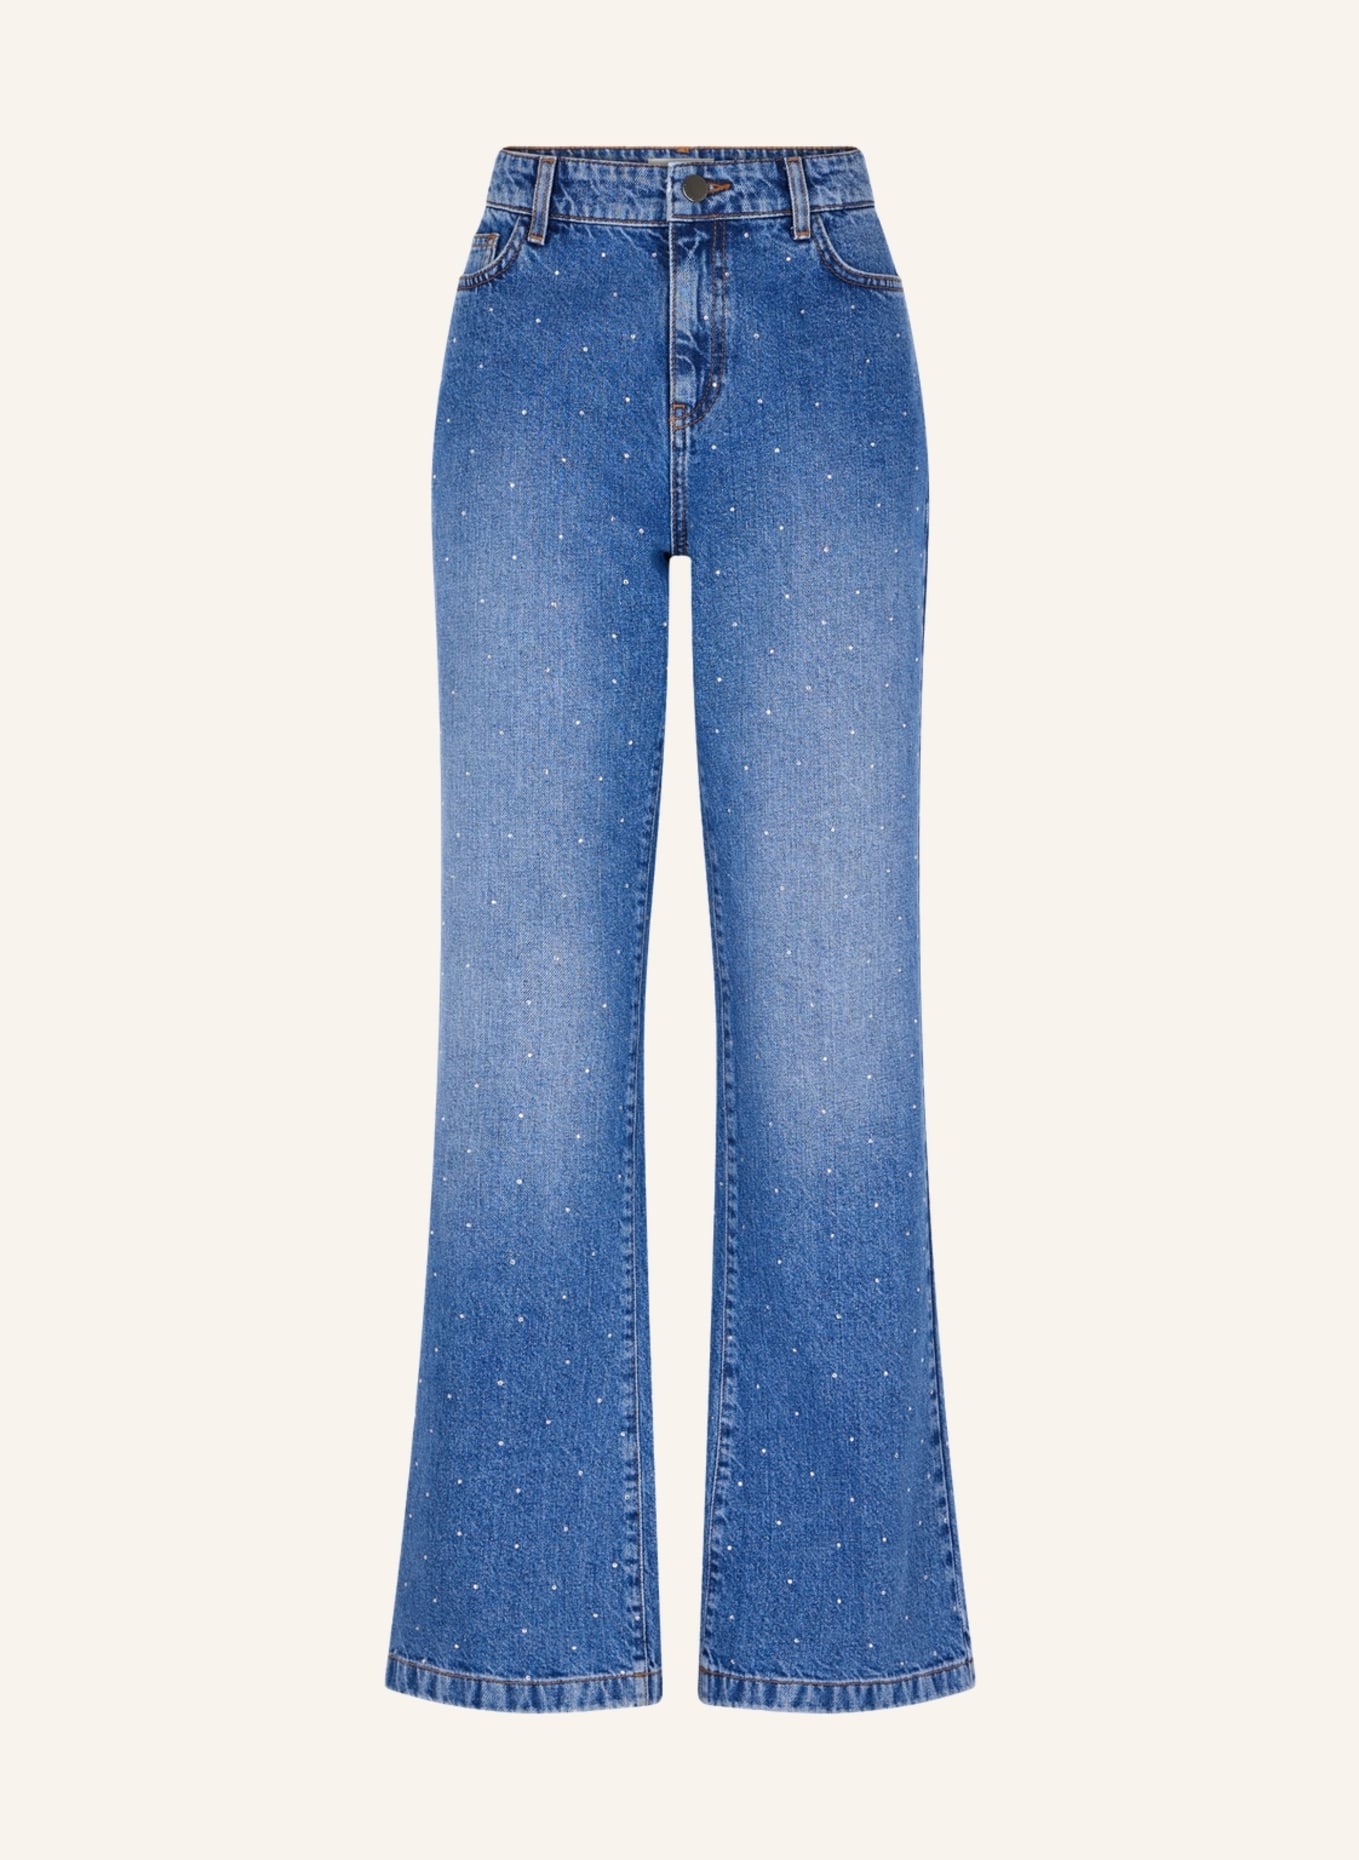 GERARD DAREL Jeans COLINE, Farbe: BLAU (Bild 1)